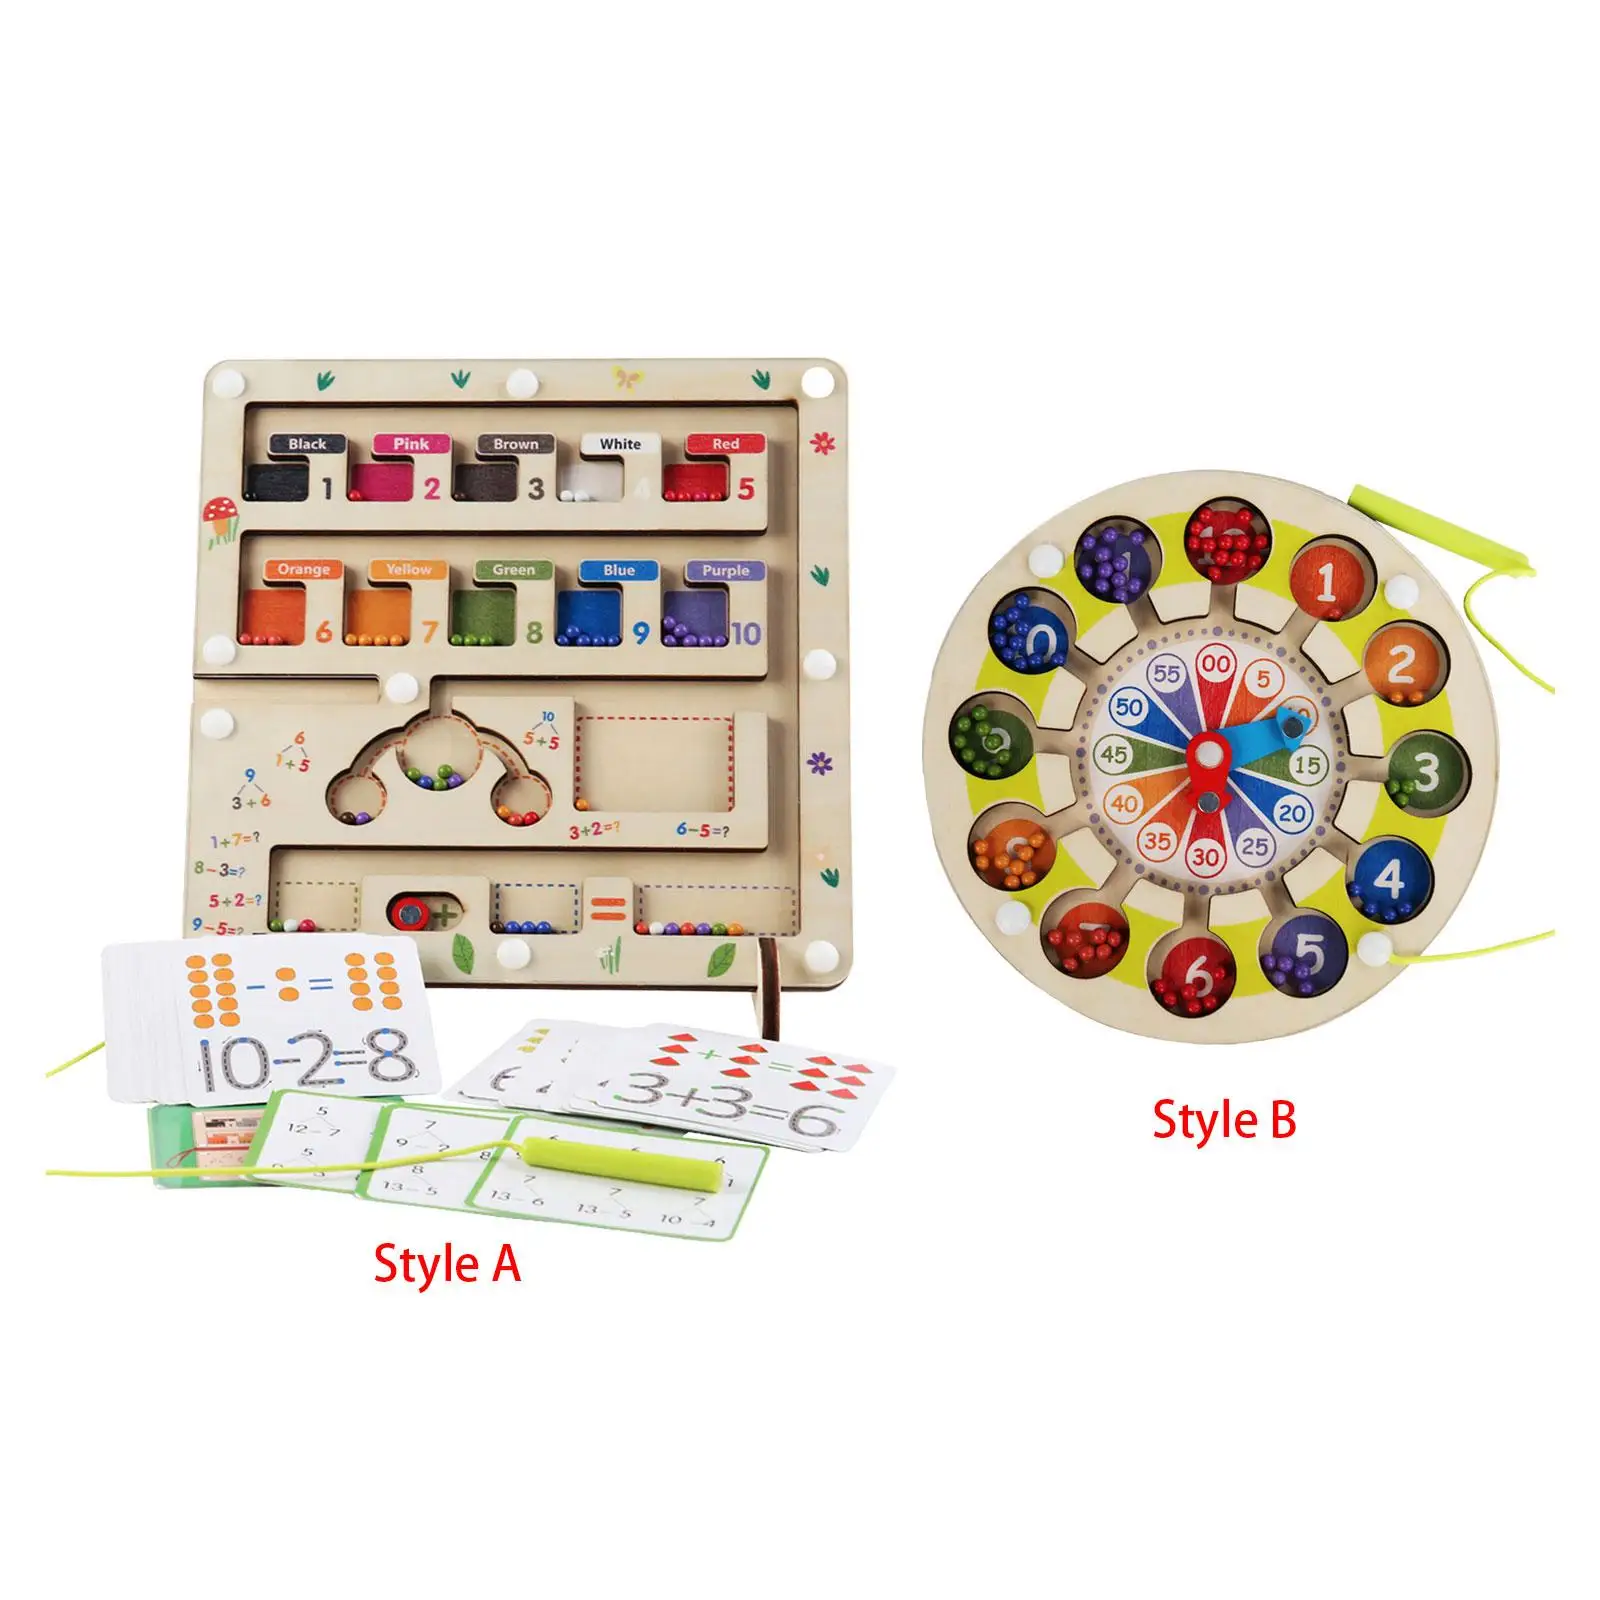 

Игрушка Монтессори, обучающая деревянная магнитная головоломка, доска, магнитный лабиринт цвета и цифры для детей дошкольного возраста для мальчиков и девочек